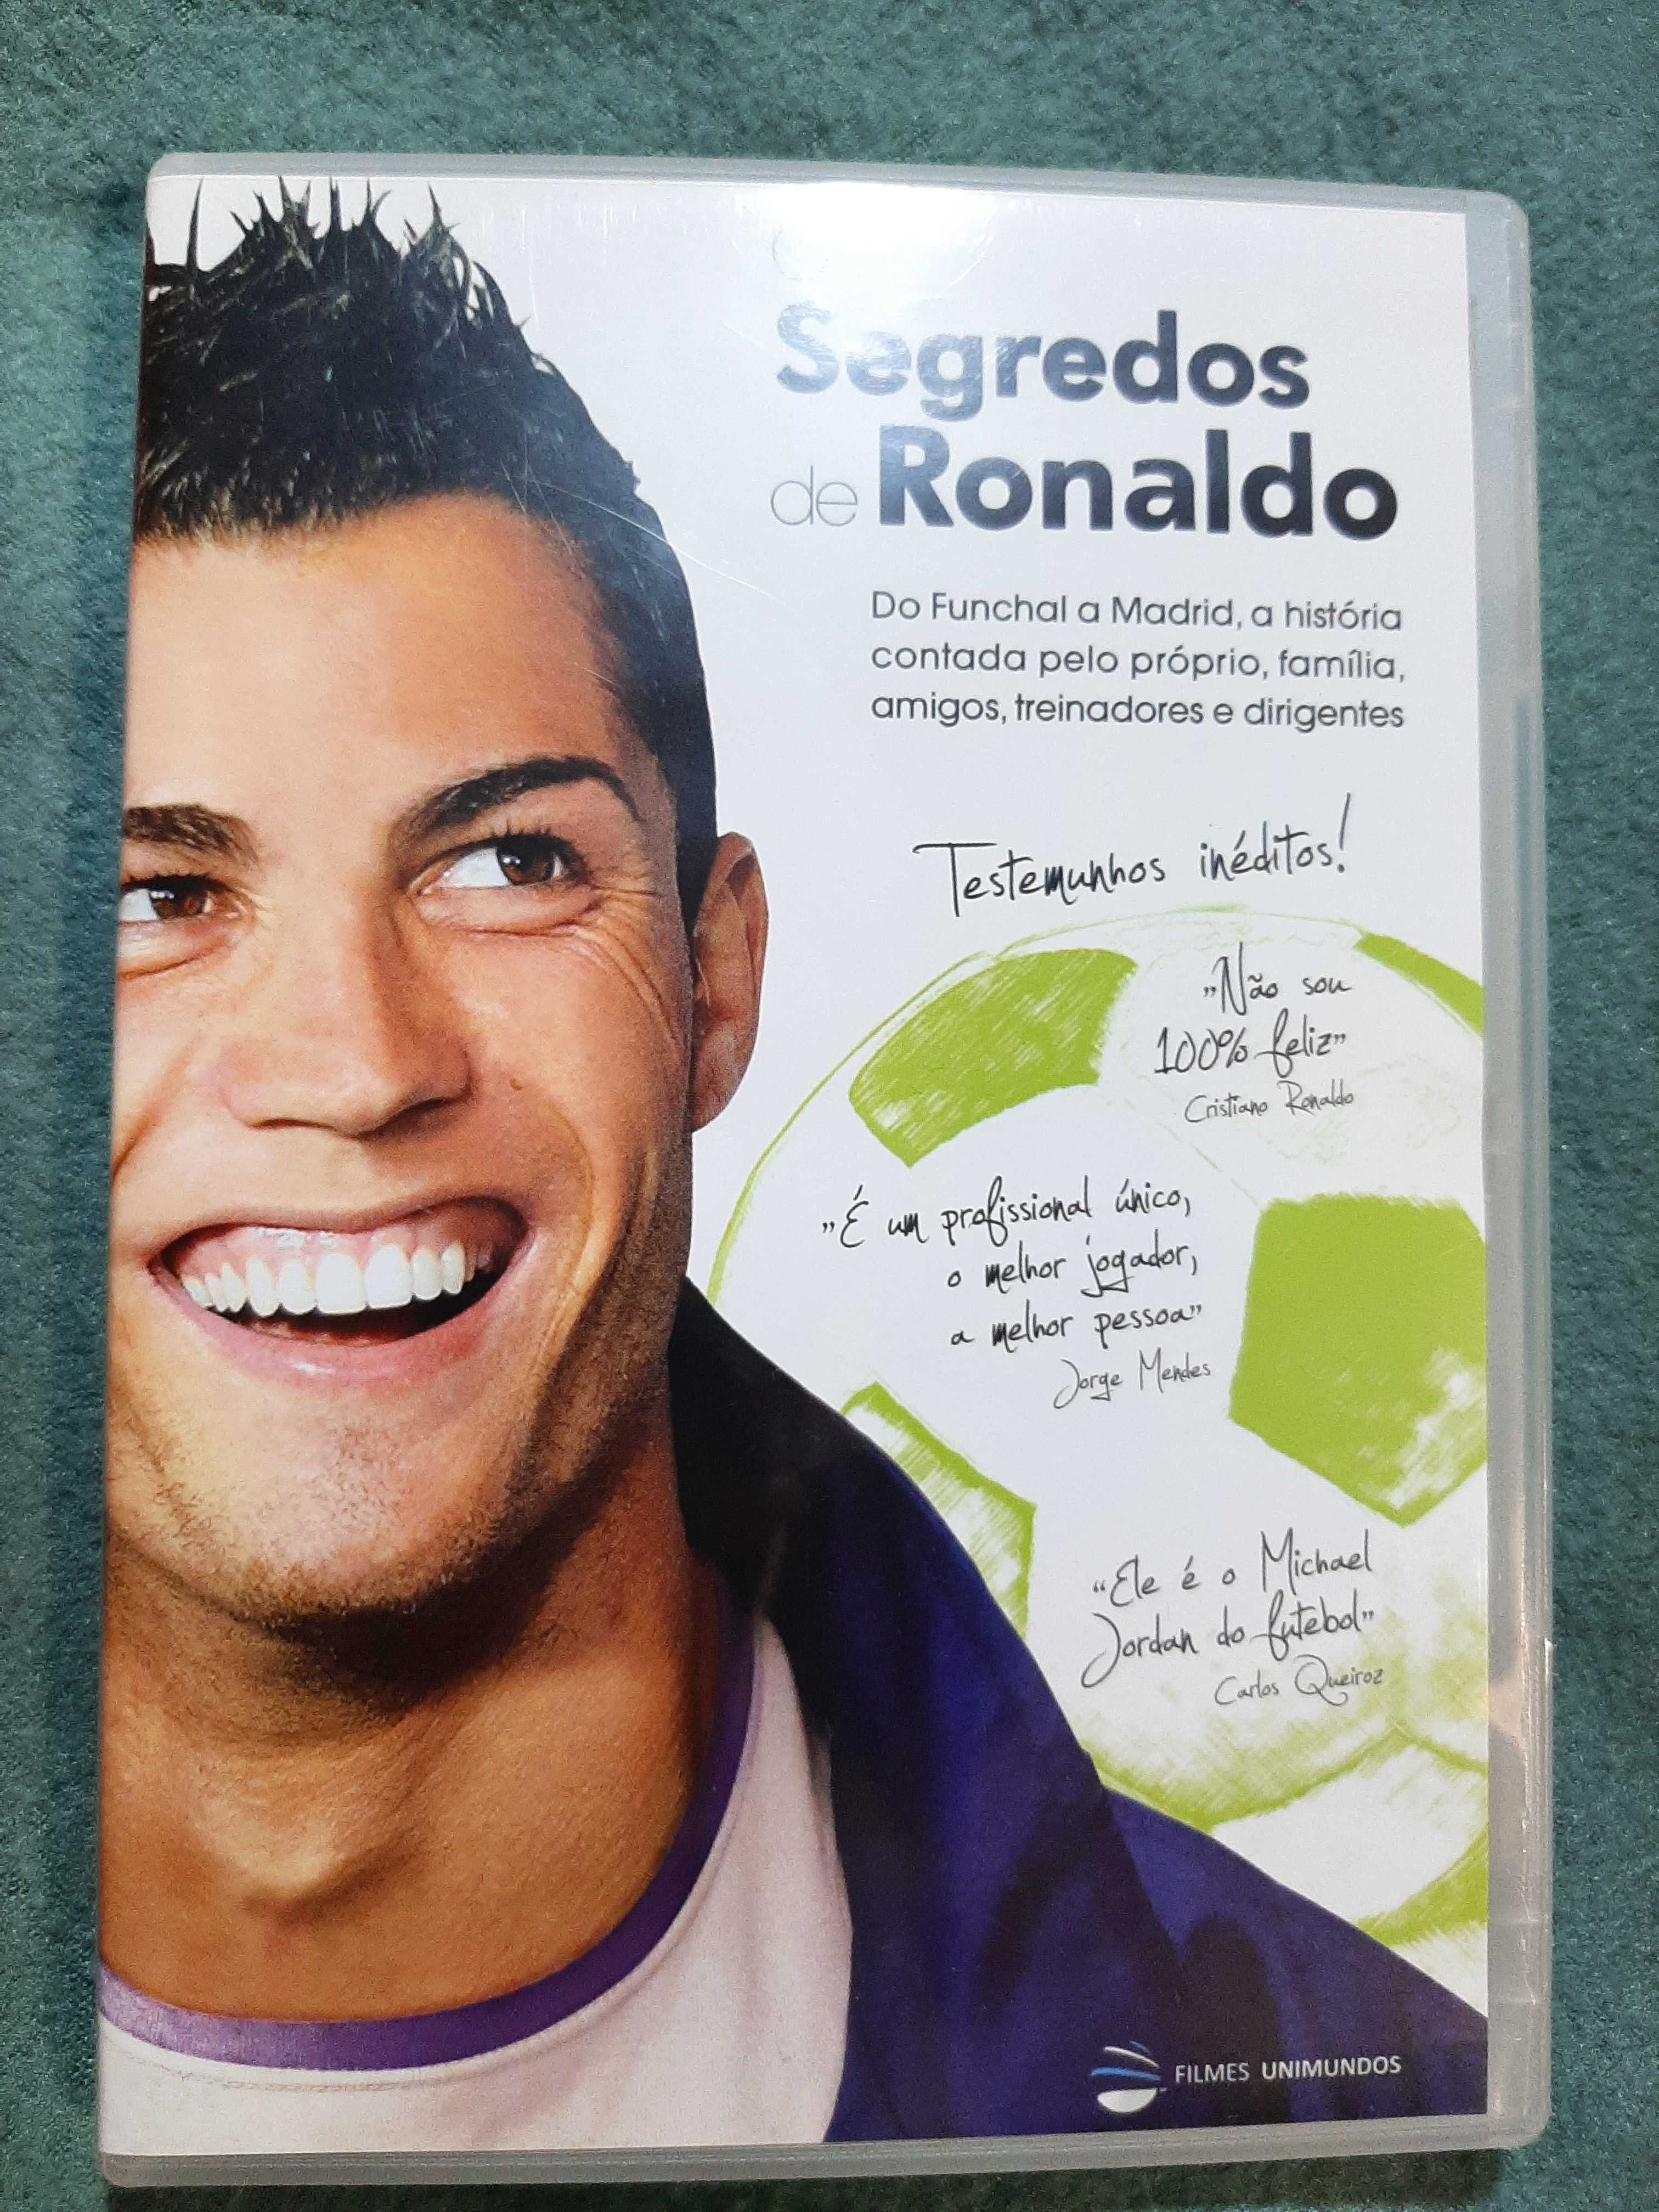 Filme "Os Segredos de Ronaldo"